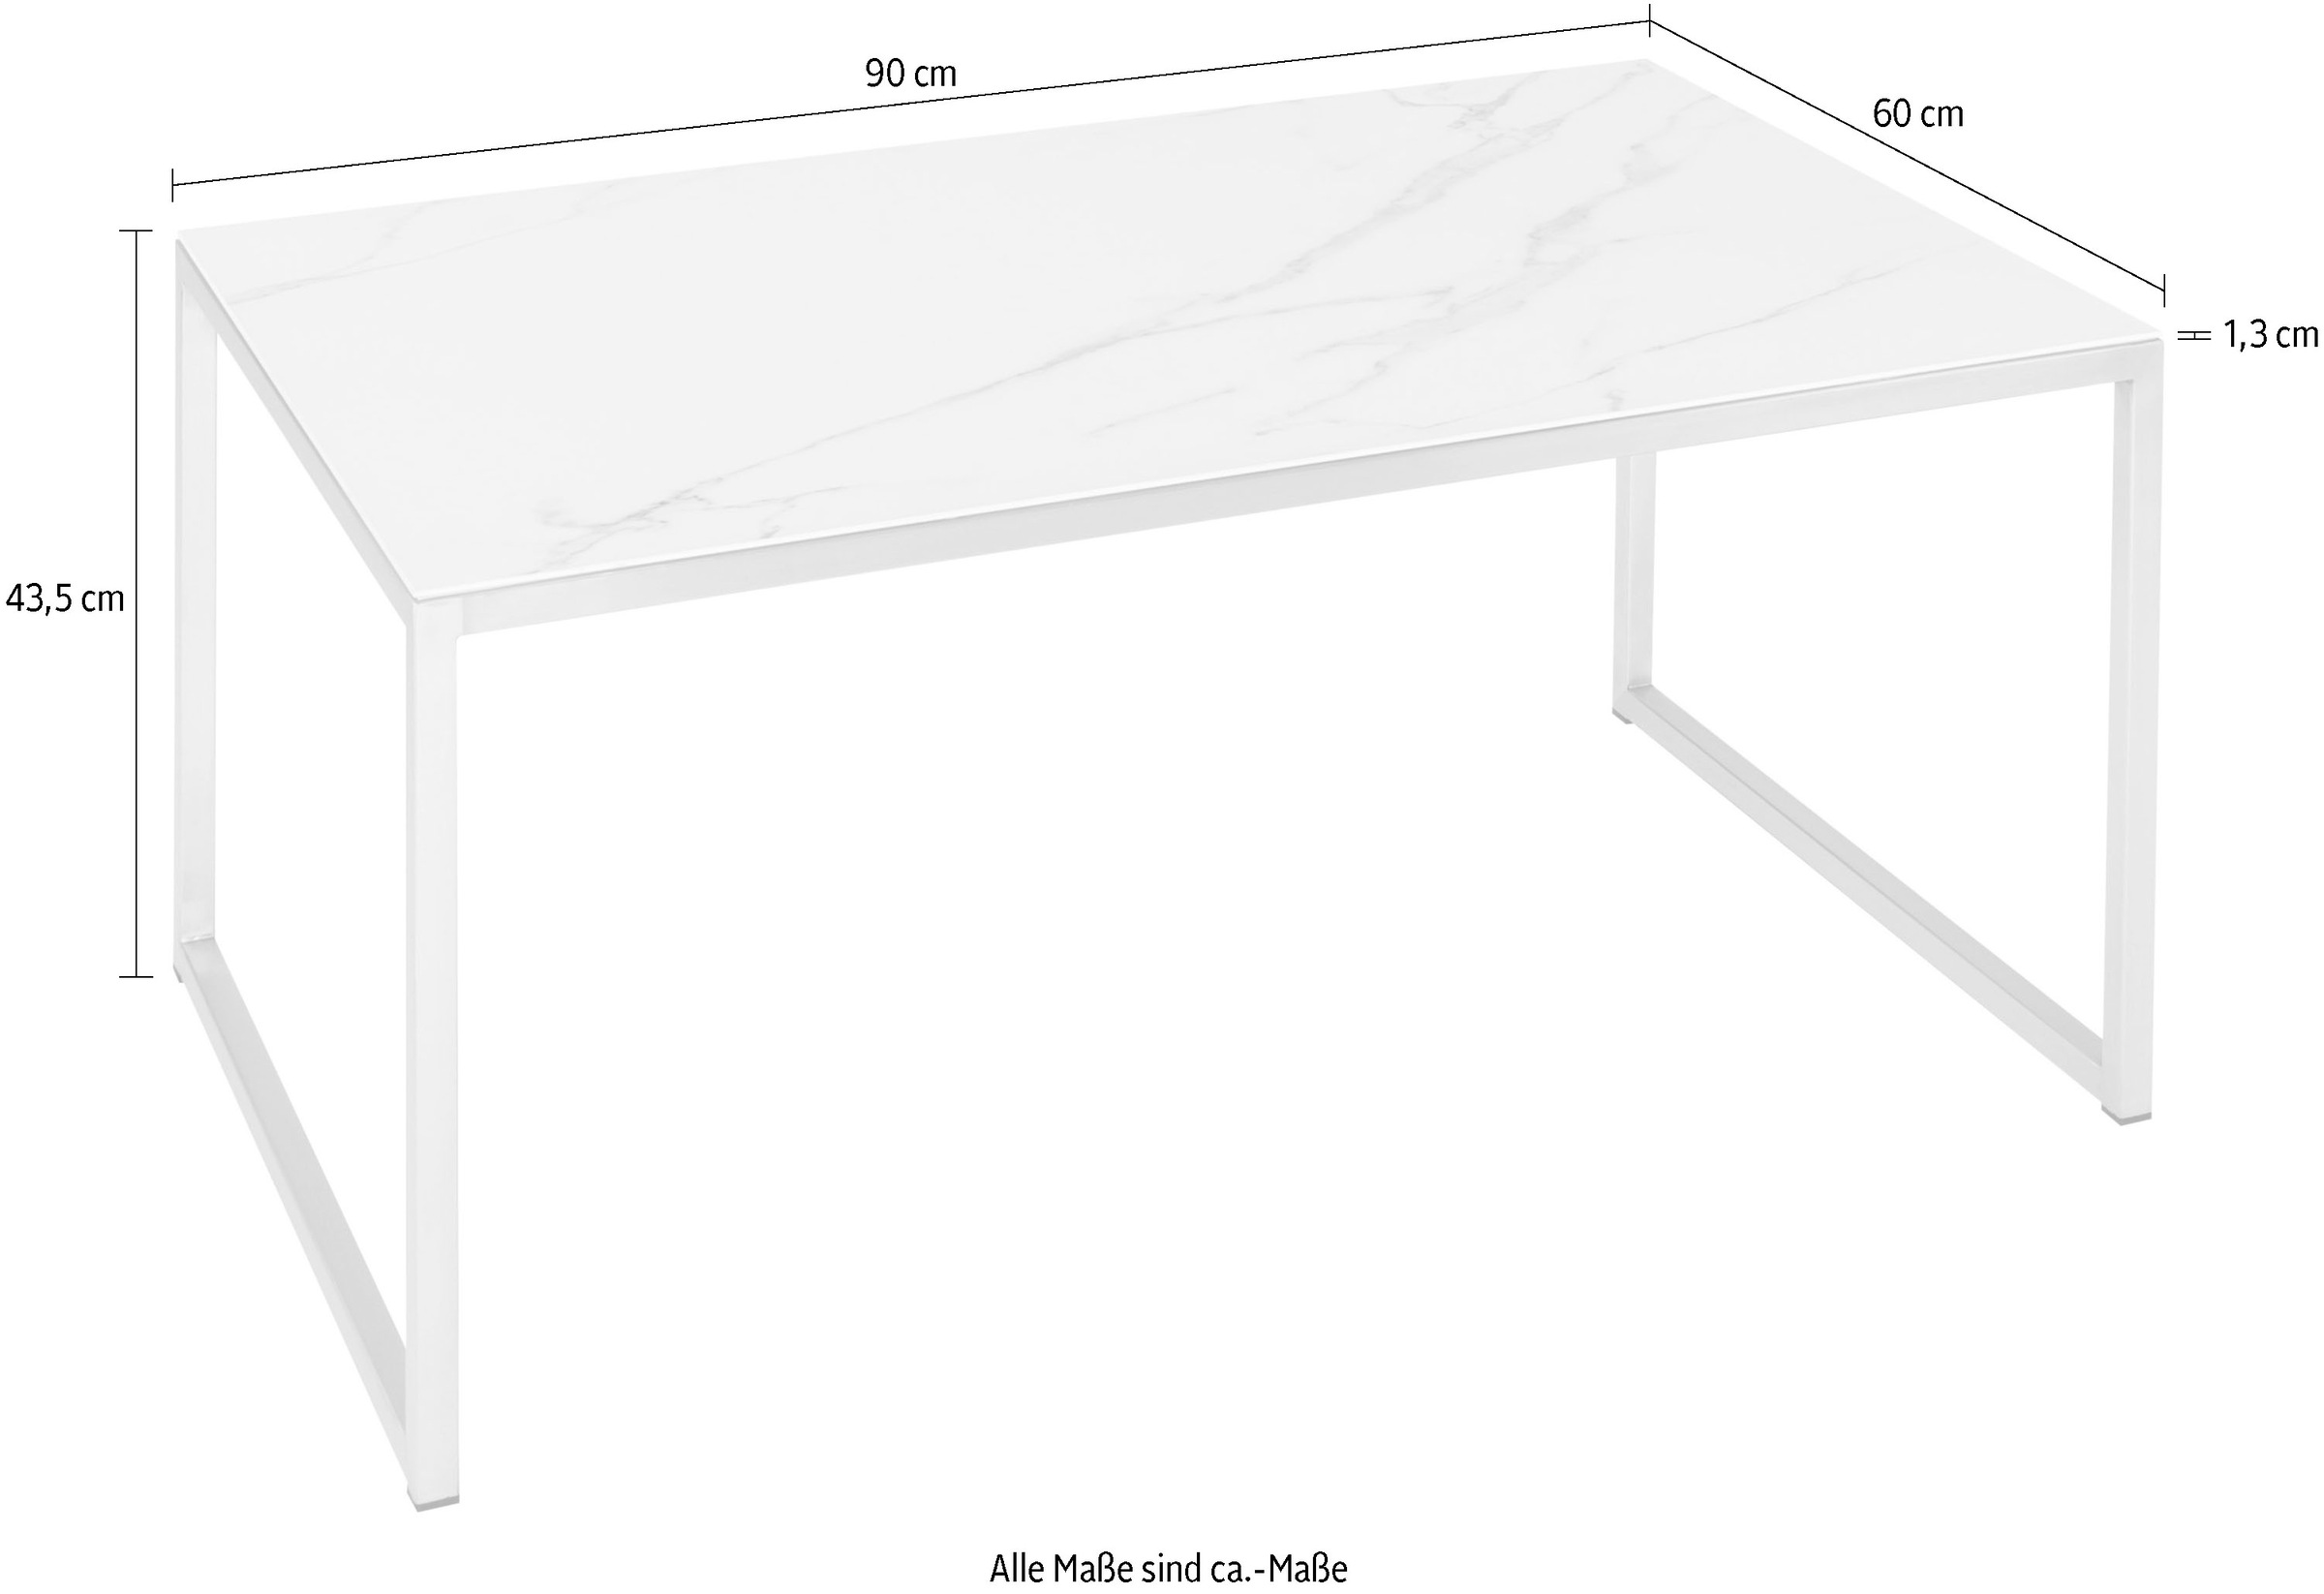 Henke Tischplatte aus Möbel Keramik, kaufen ein Musterung in Unikat Couchtisch, online der jeder Tisch